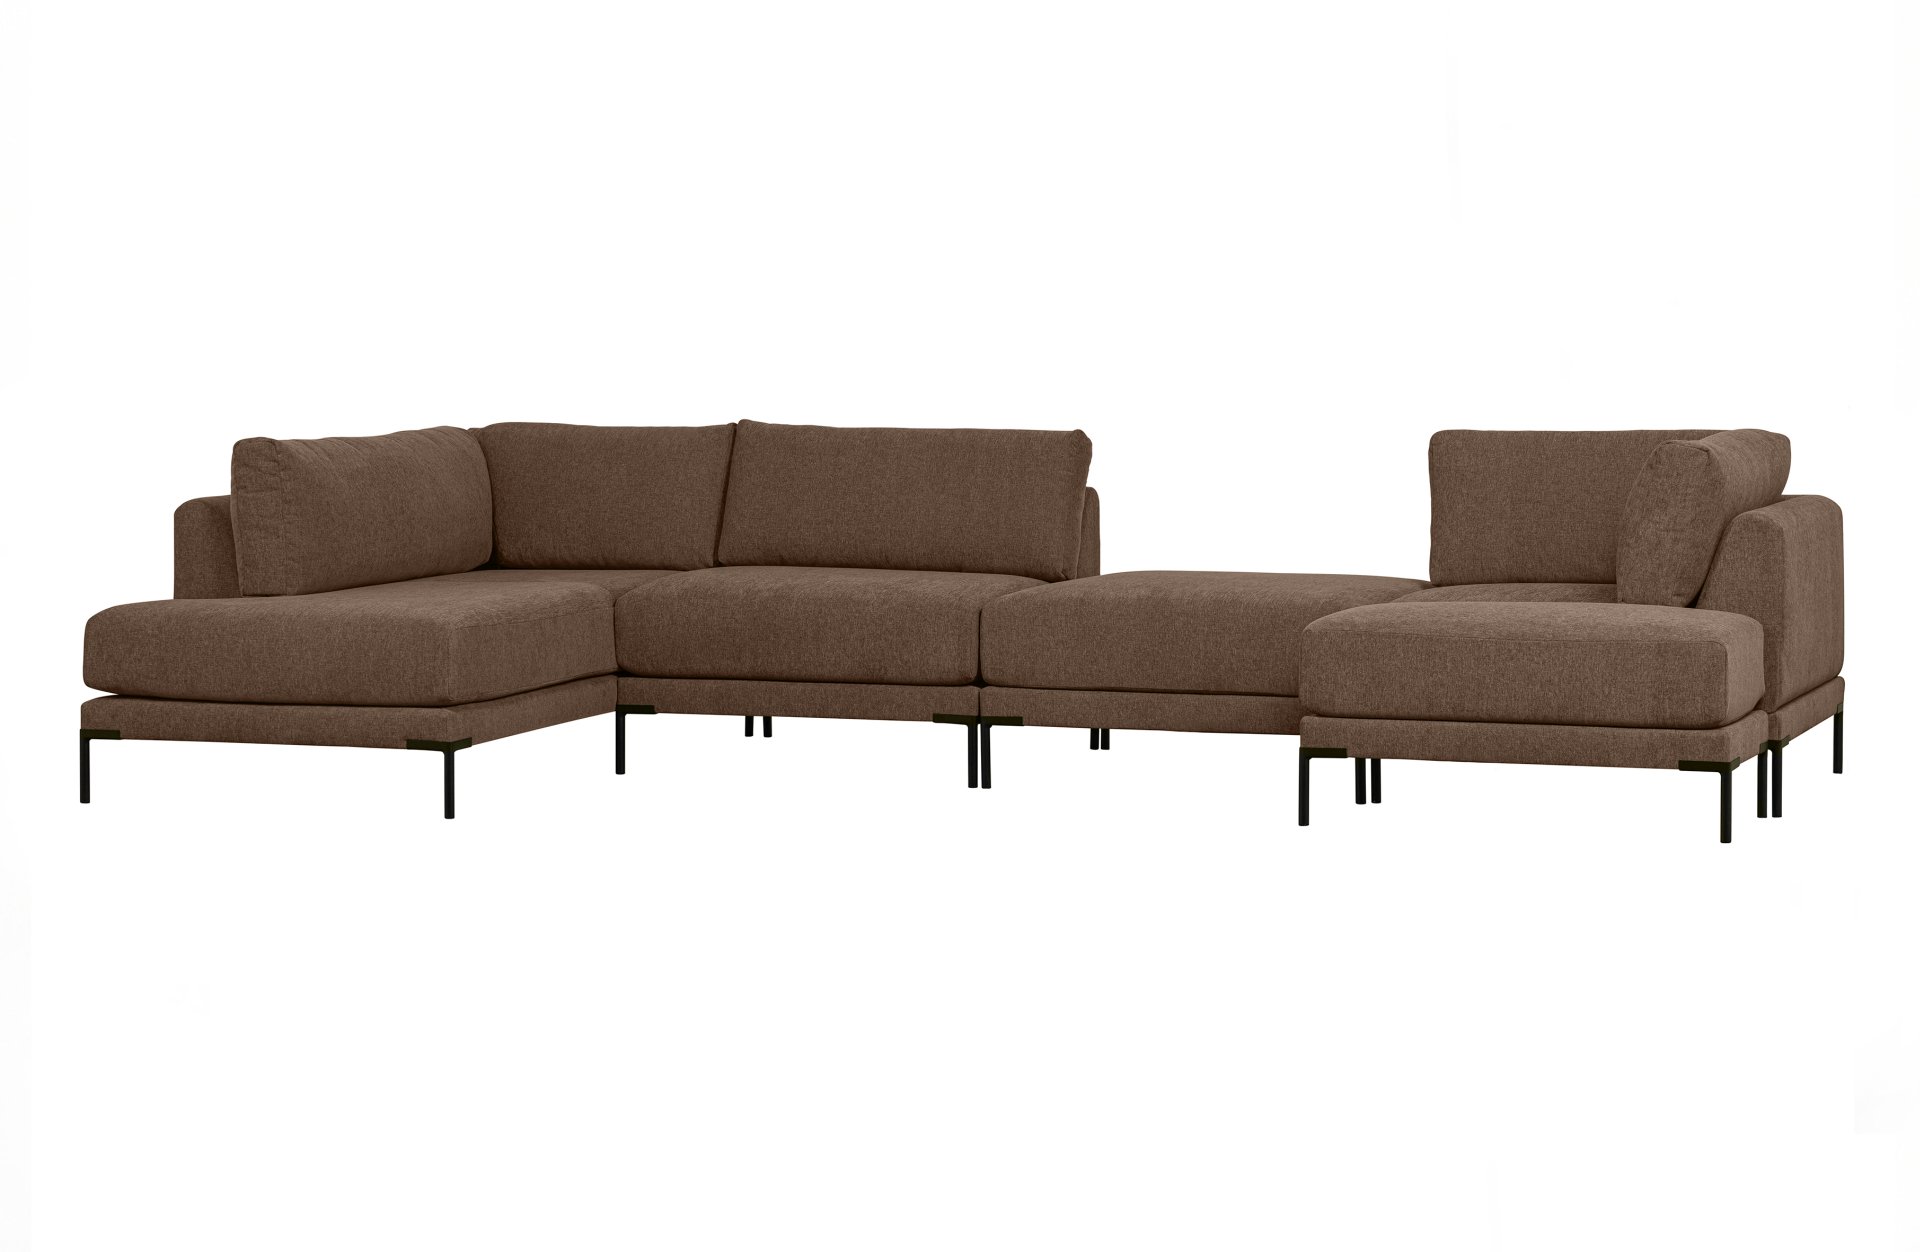 Das Modulsofa Couple Lounge überzeugt mit seinem modernen Design. Das Lounge Element mit der Ausführung Rechts wurde aus Melange Stoff gefertigt, welcher einen einen braunen Farbton besitzen. Das Gestell ist aus Metall und hat eine schwarze Farbe. Das Ele